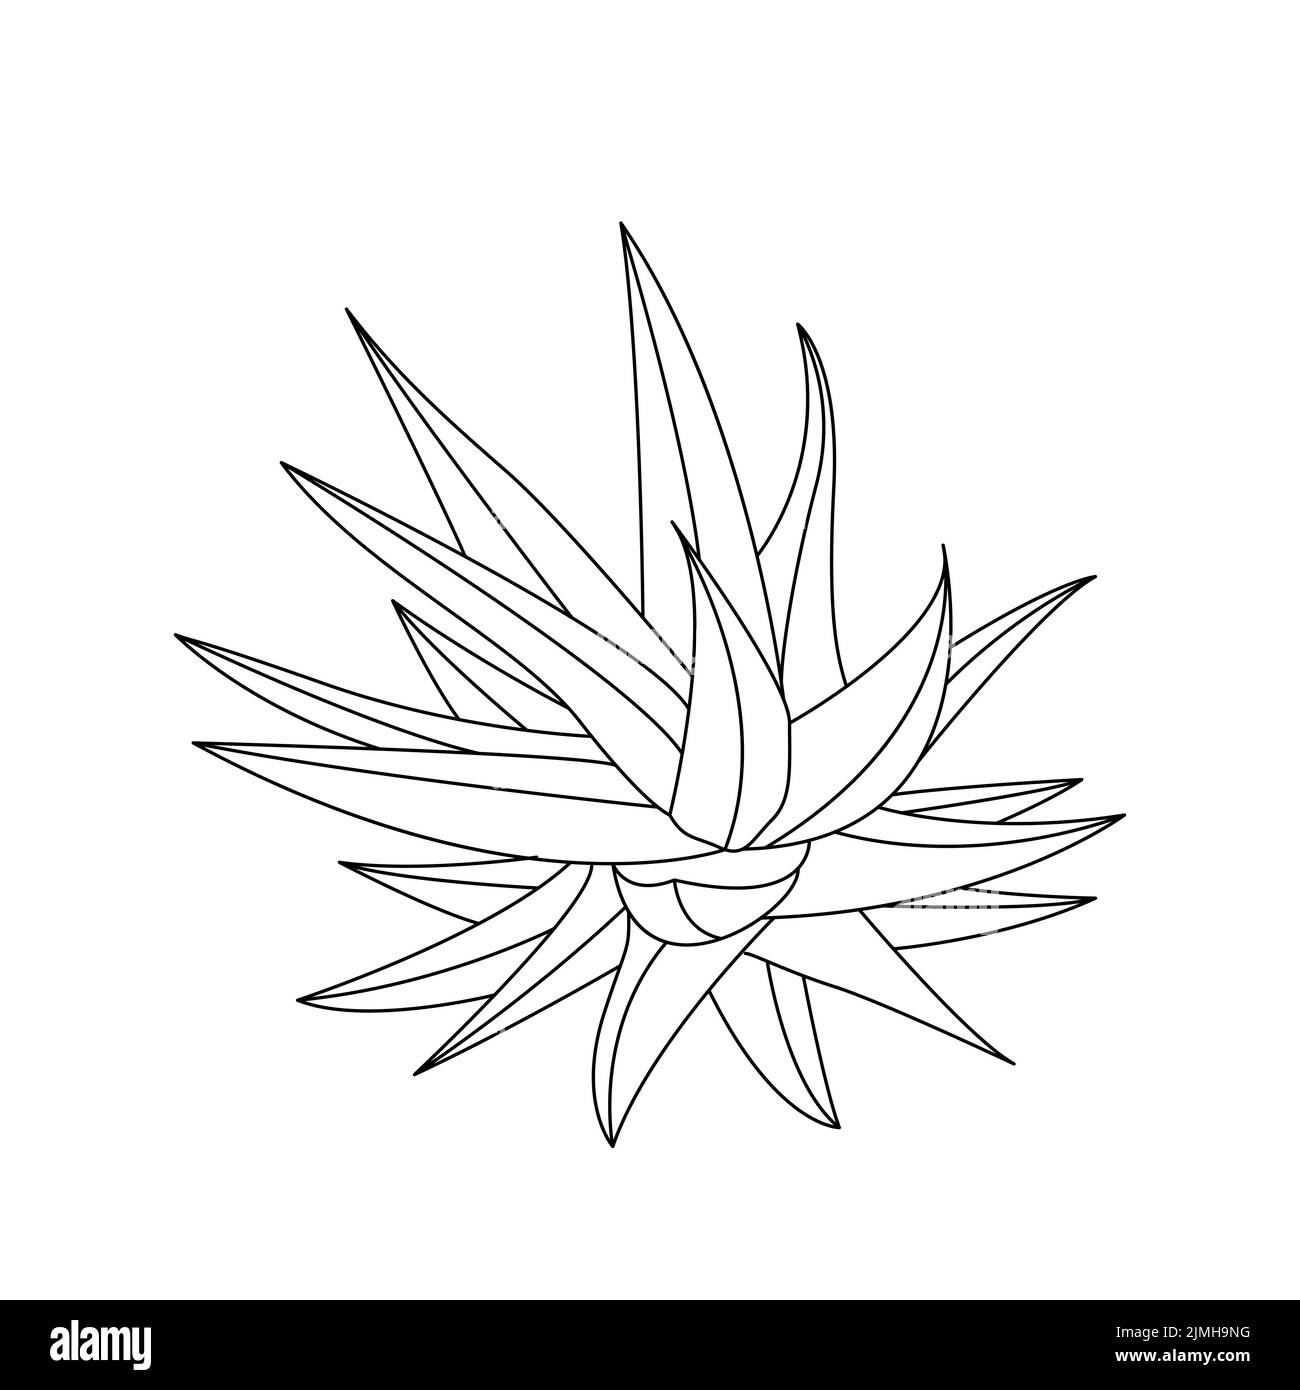 Vektor Hand gezeichnet botanischen Aloe Vera. Vektor. Isolierter Hintergrund. Stock Vektor